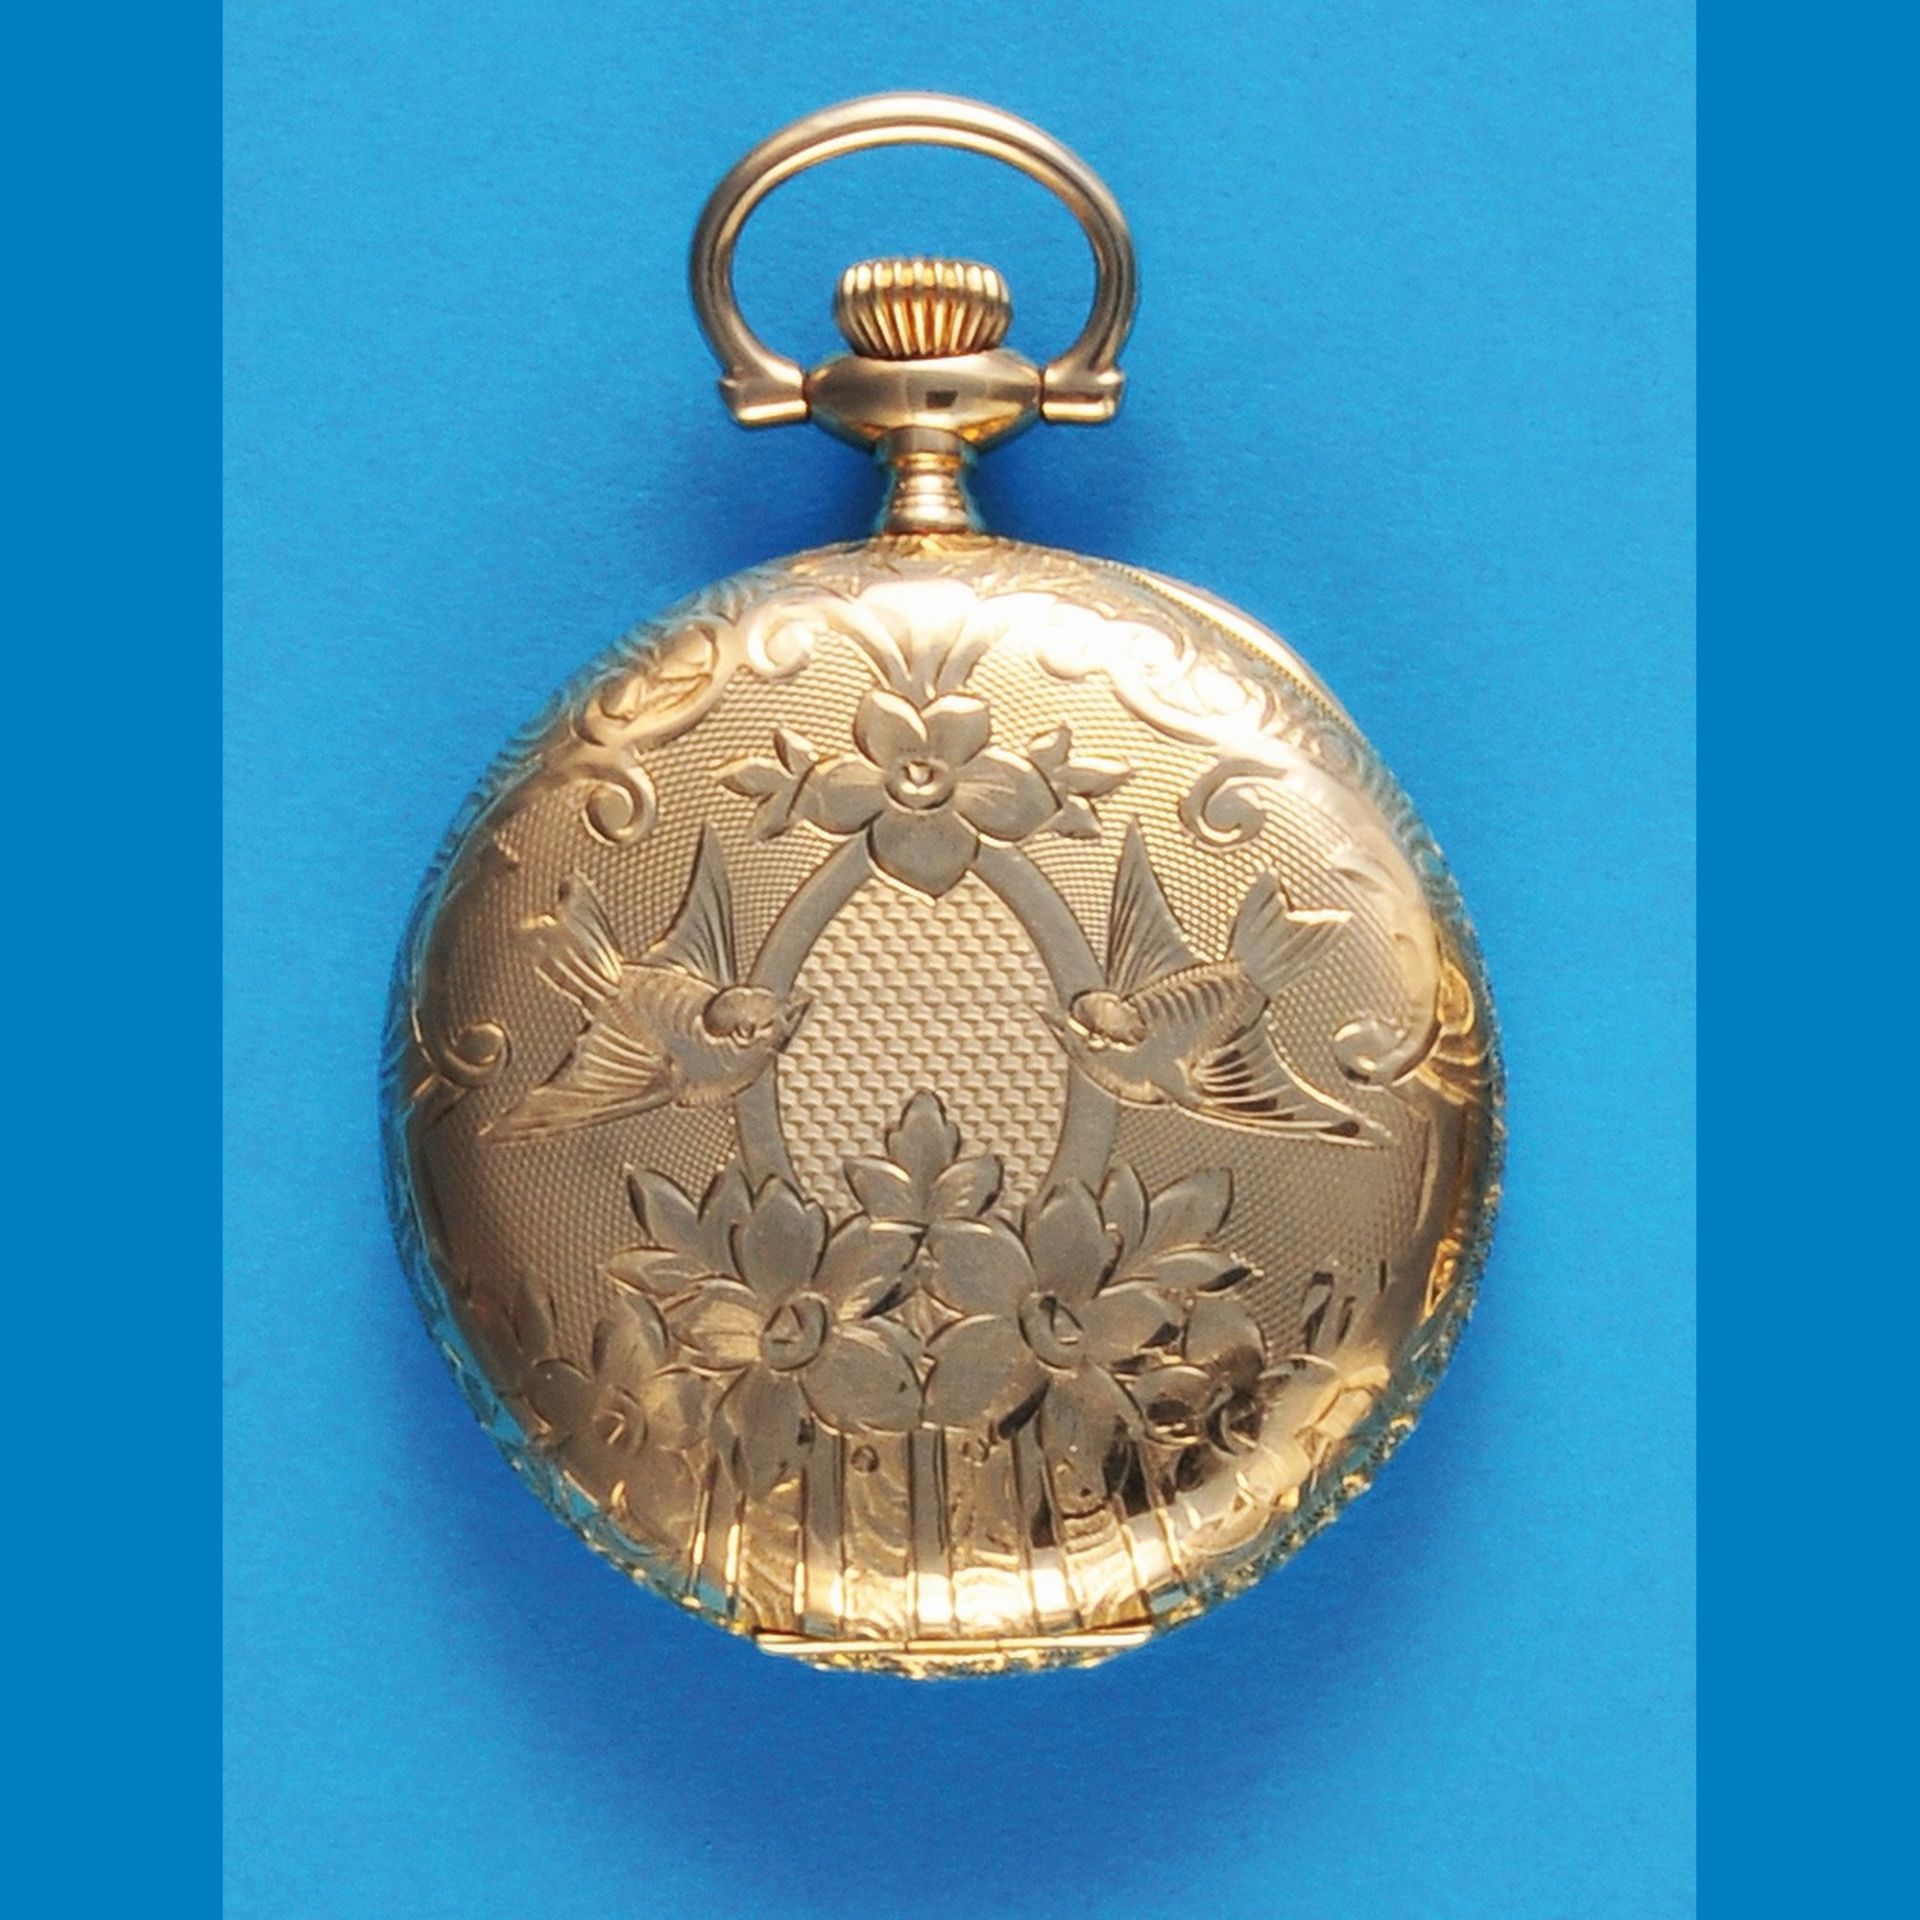 Reich gravierte Jugendstil-Goldtaschenuhr mit Sprungdeckel, A.W.W.Co. Waltham, Mass., mit Vögeln - Bild 2 aus 2